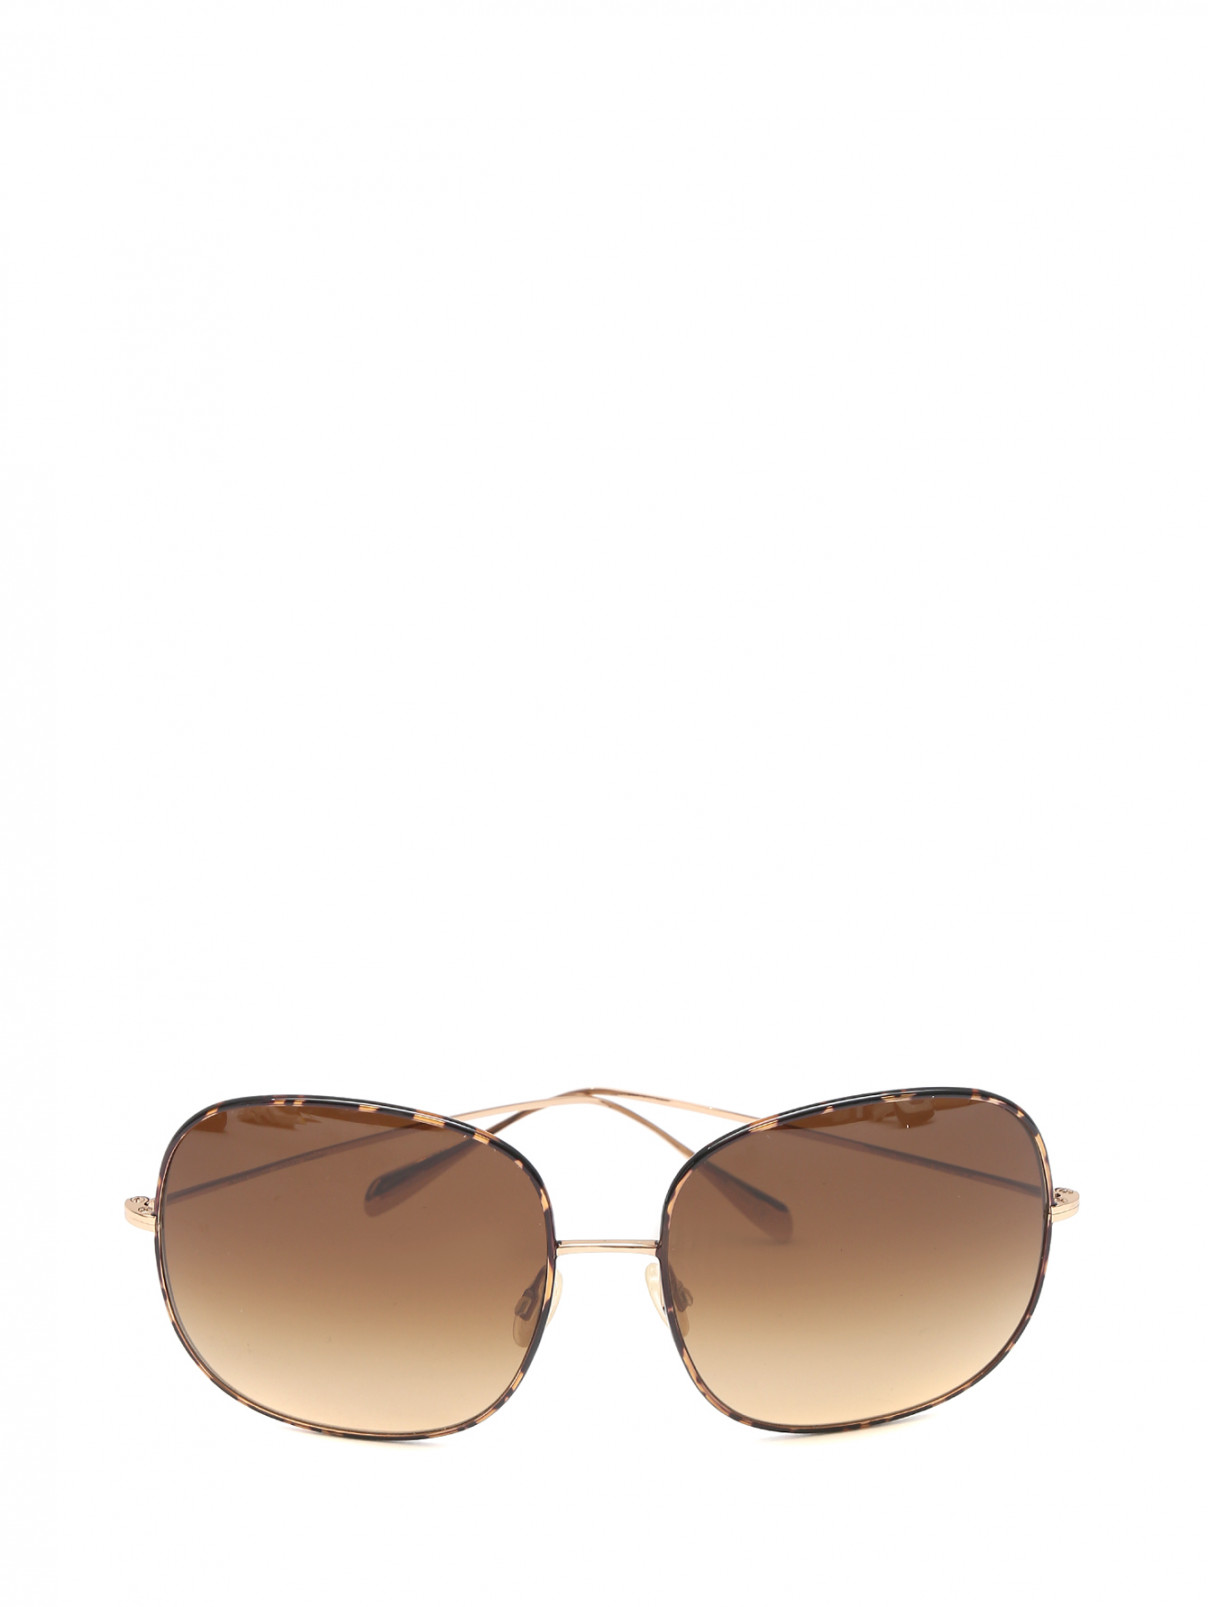 Cолнцезащитные очки в оправе из металла Oliver Peoples  –  Общий вид  – Цвет:  Коричневый